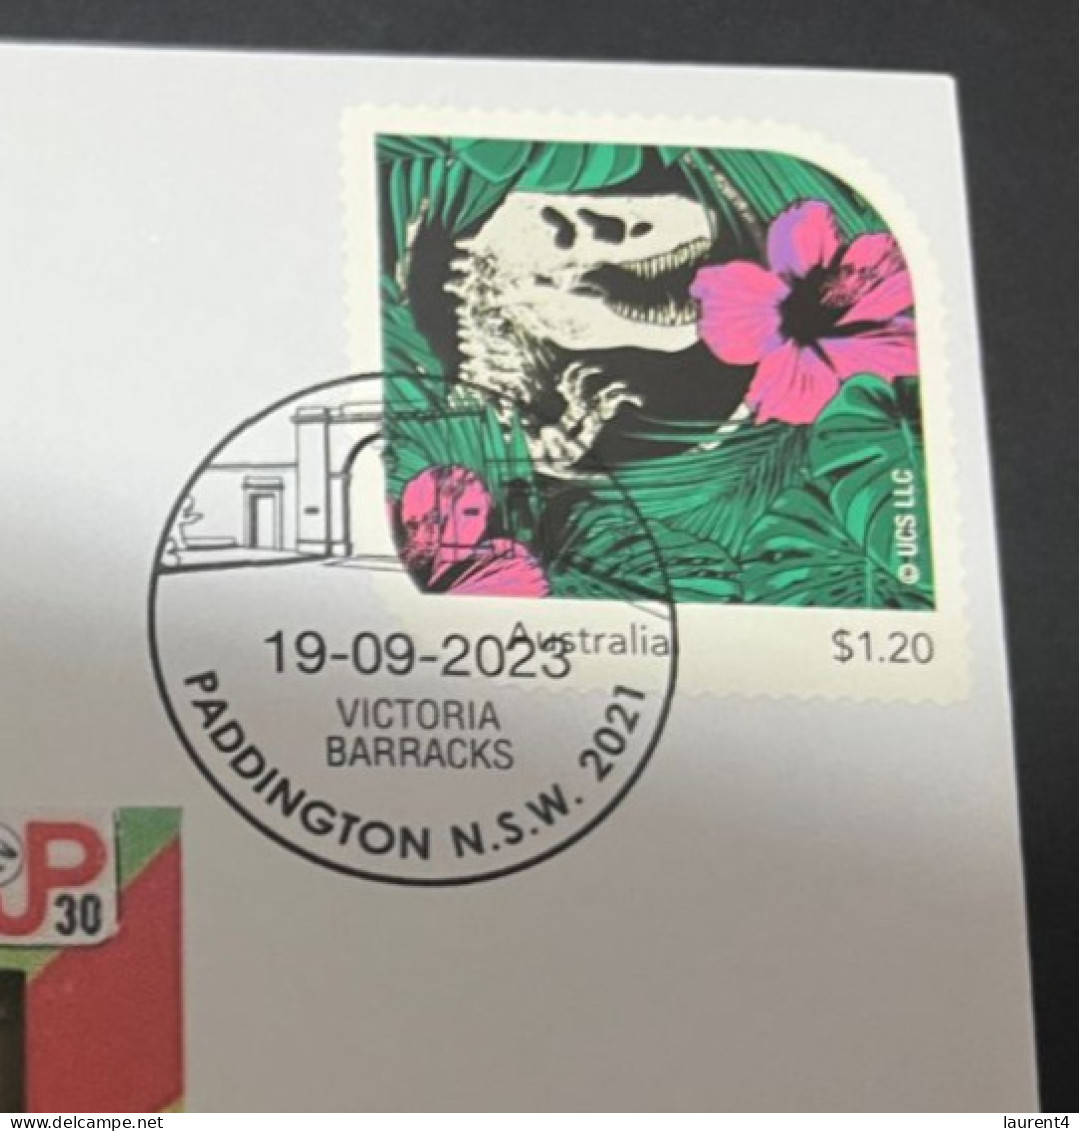 13-5-2024 (45 Z 2) Australian Personalised Stamp Isssued For Jurassic Park 30th Anniversary (Dinosaur) - Vor- U. Frühgeschichte